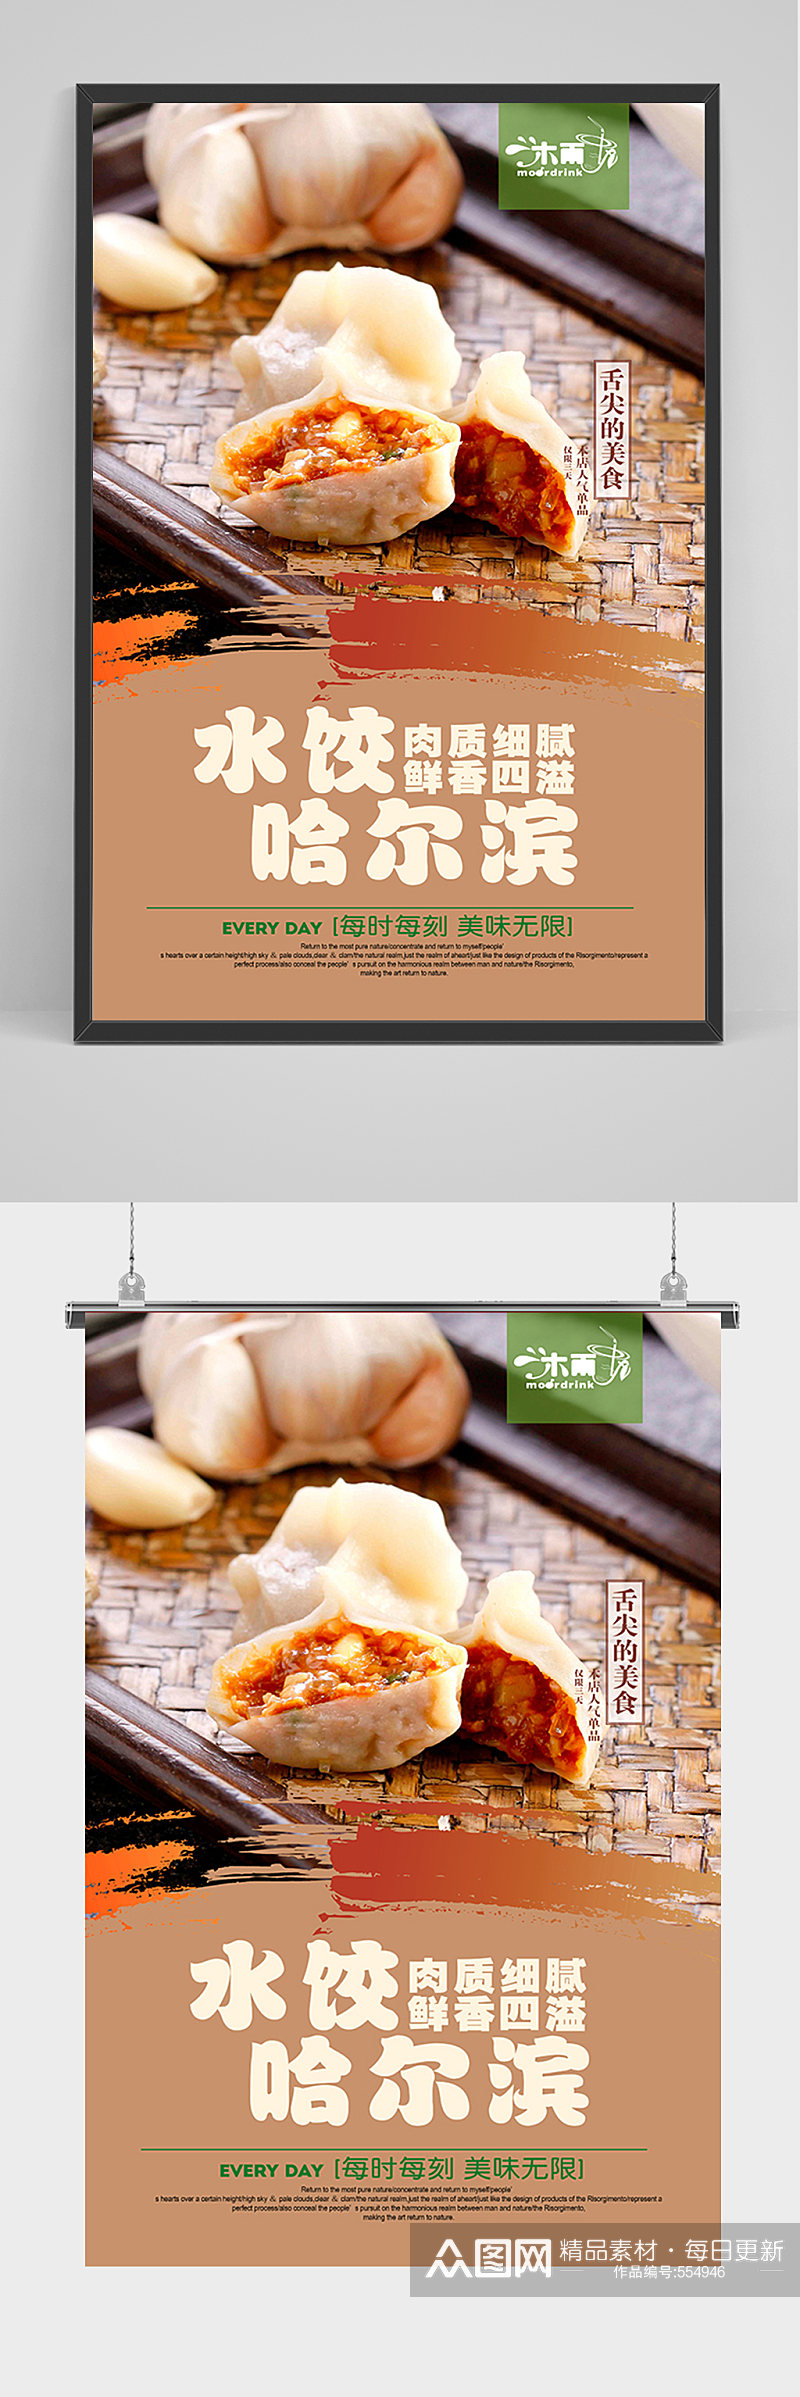 美食东北哈尔滨水饺宣传海报素材